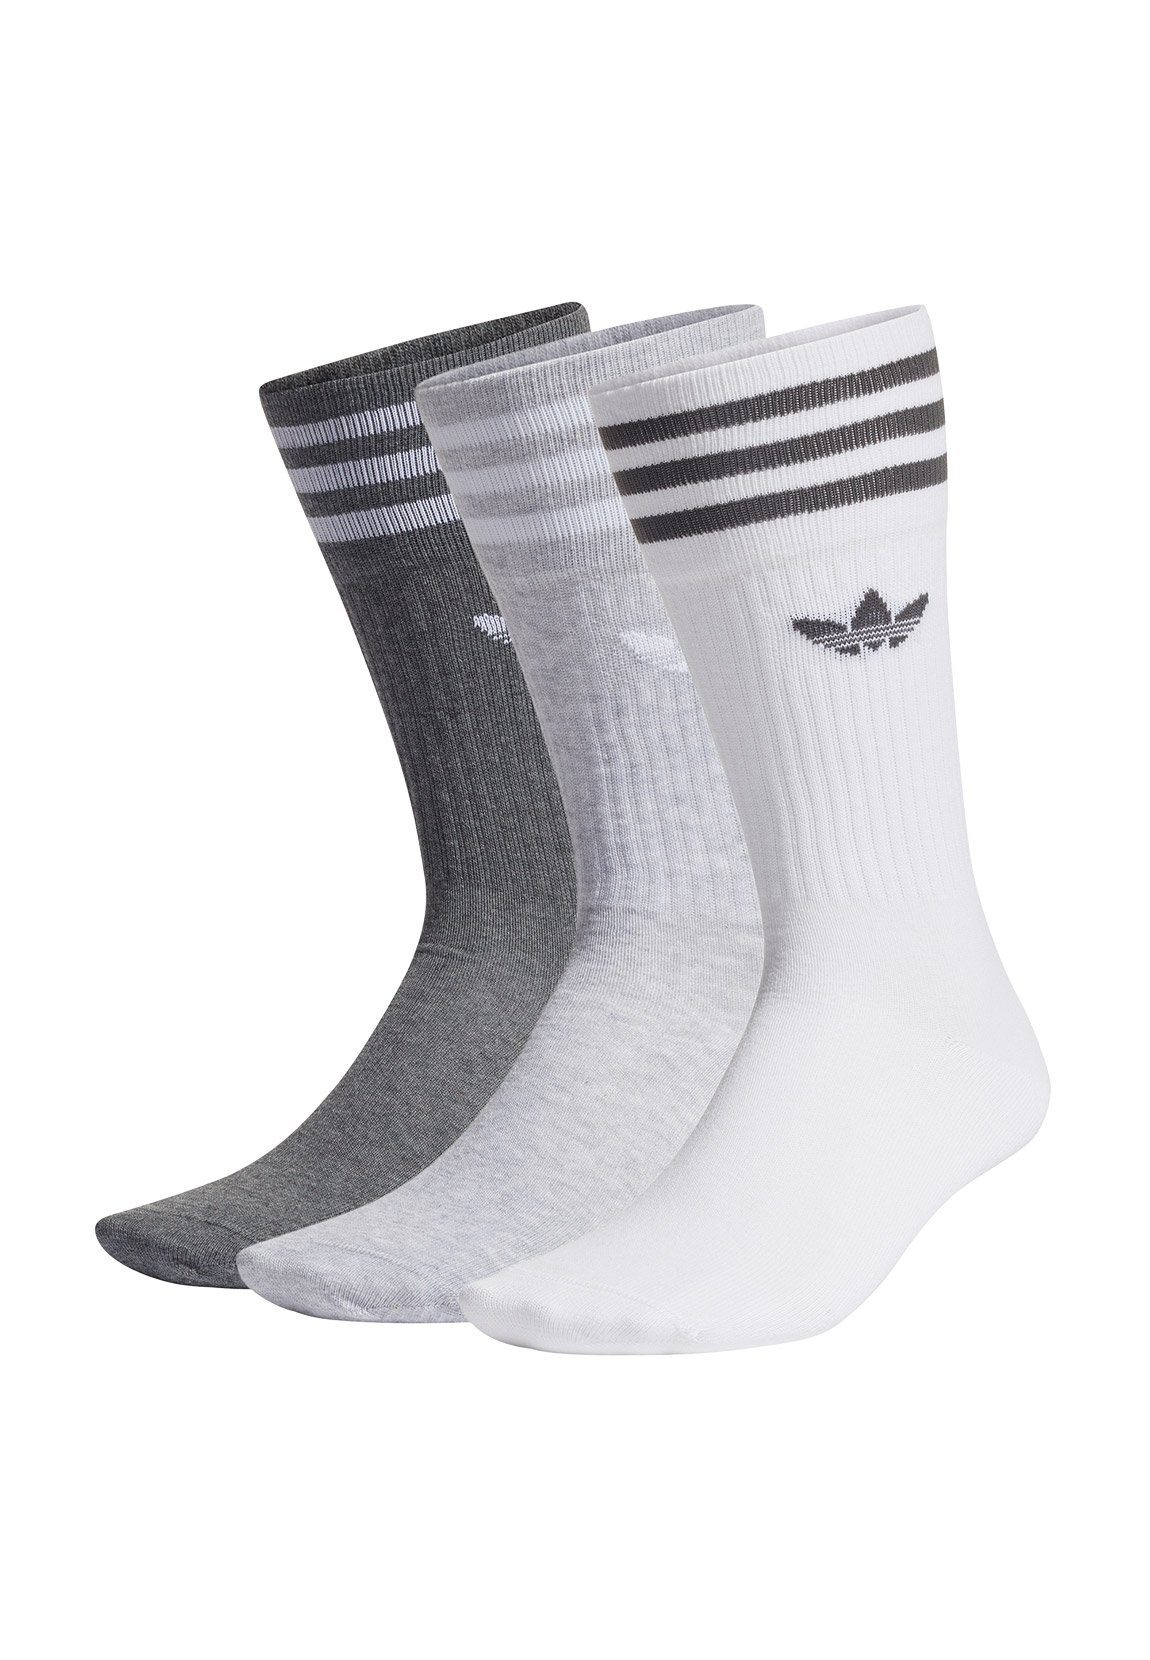 adidas Originals Freizeitsocken Adidas Originals Socken SOLID CREW H62021  Mehrfarbig Grau Weiss